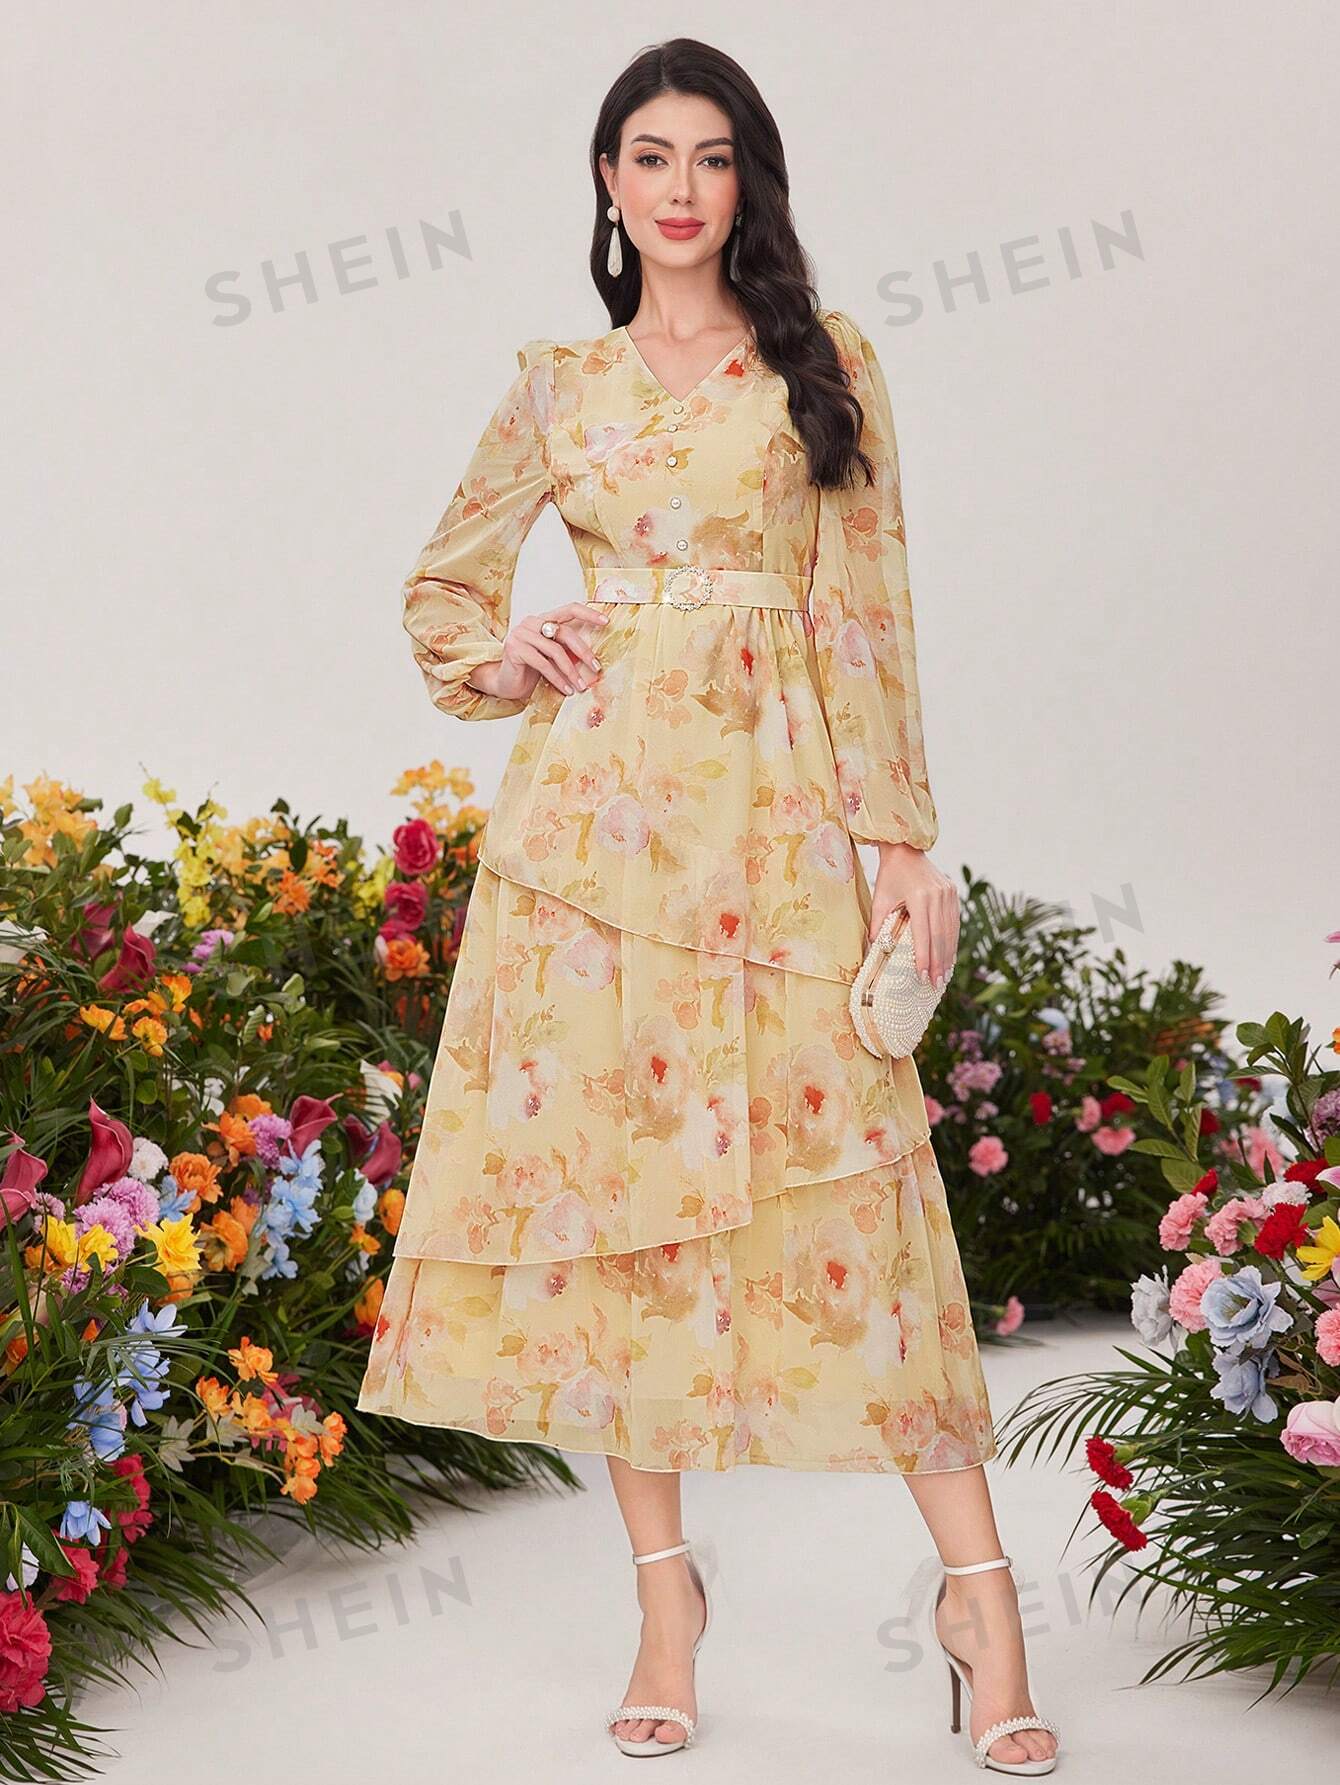 платье миди женское летнее с цветочным принтом и рукавами фонариками SHEIN Modely женское платье с цветочным принтом и рукавами-фонариками, многоцветный